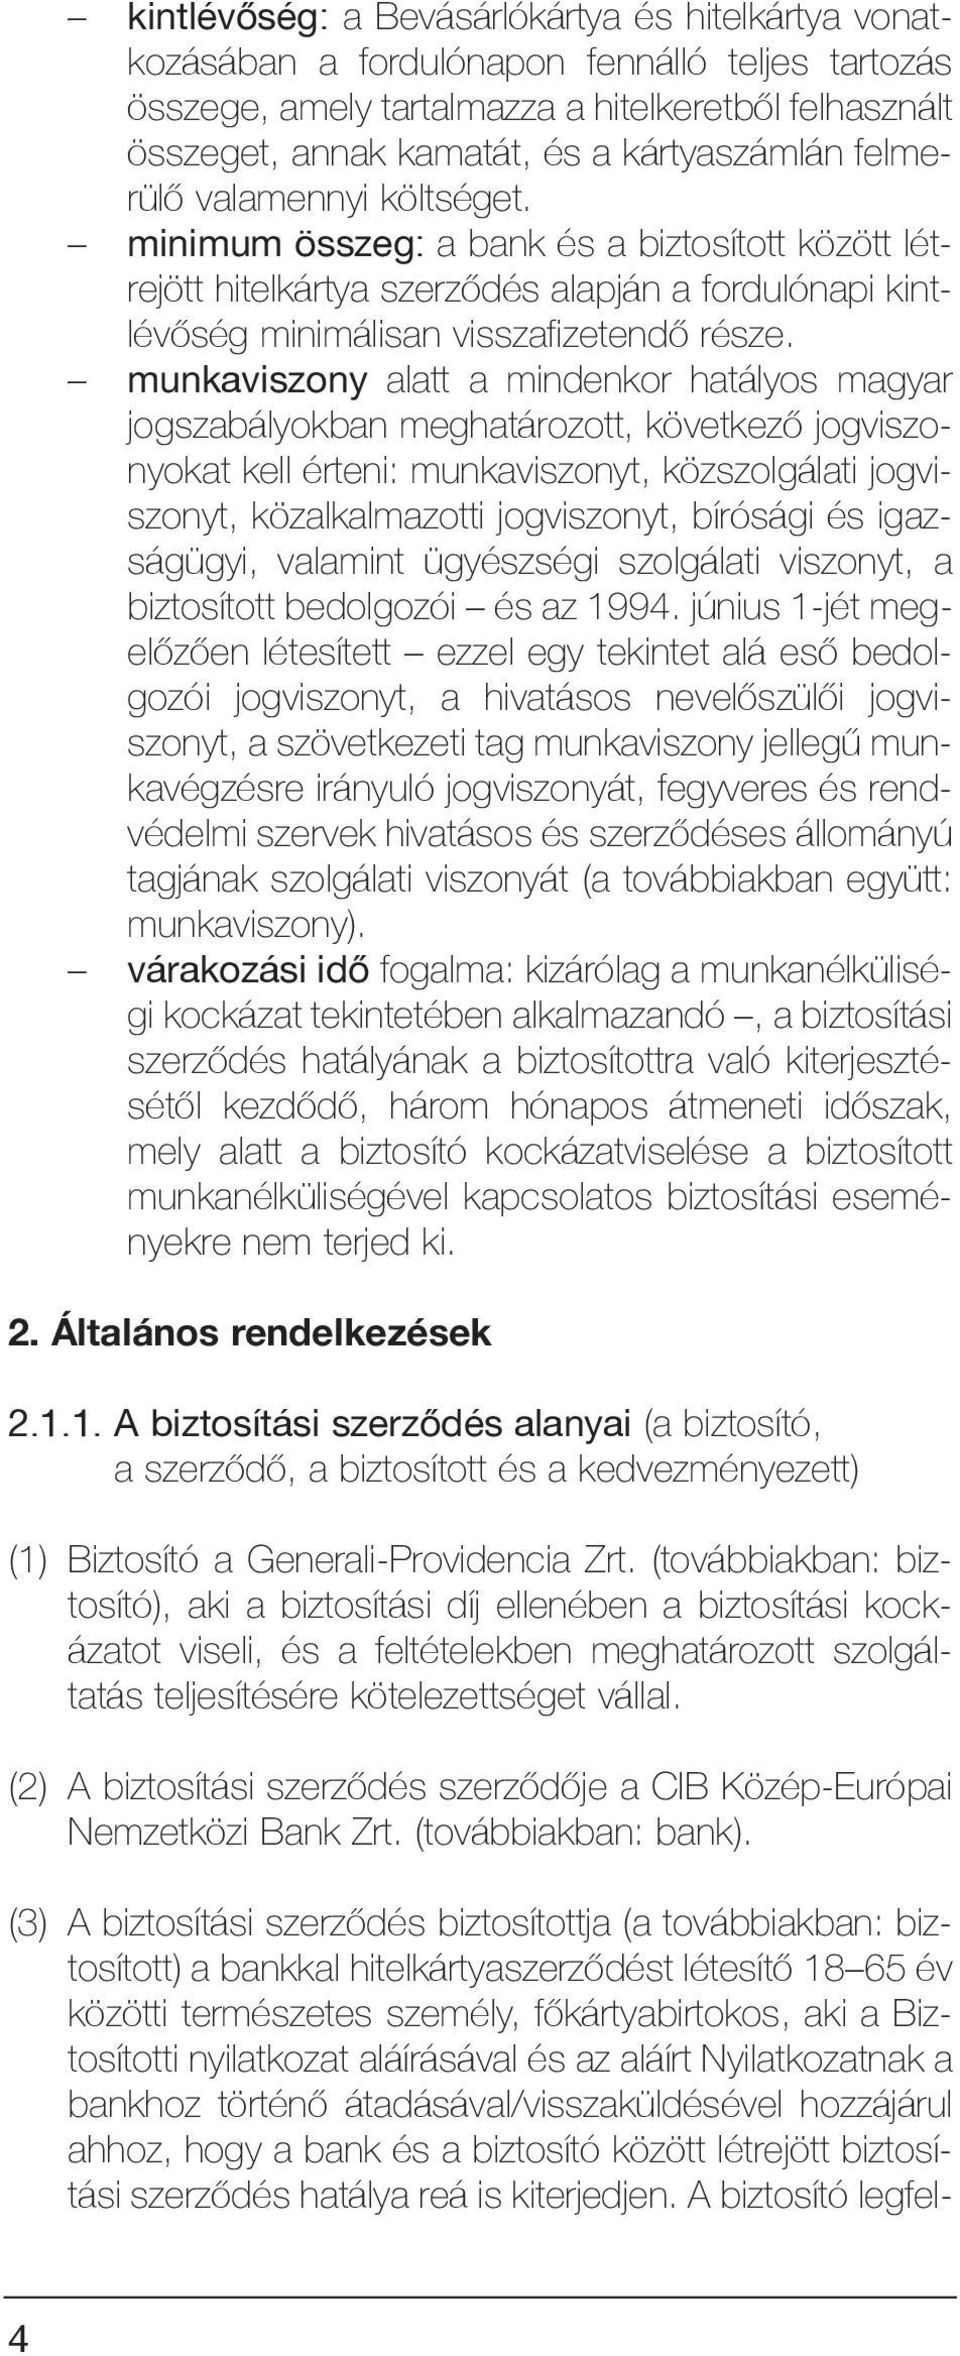 munkaviszony alatt a mindenkor hatályos magyar jogszabályokban meghatározott, következõ jogviszonyokat kell érteni: munkaviszonyt, közszolgálati jogviszonyt, közalkalmazotti jogviszonyt, bírósági és